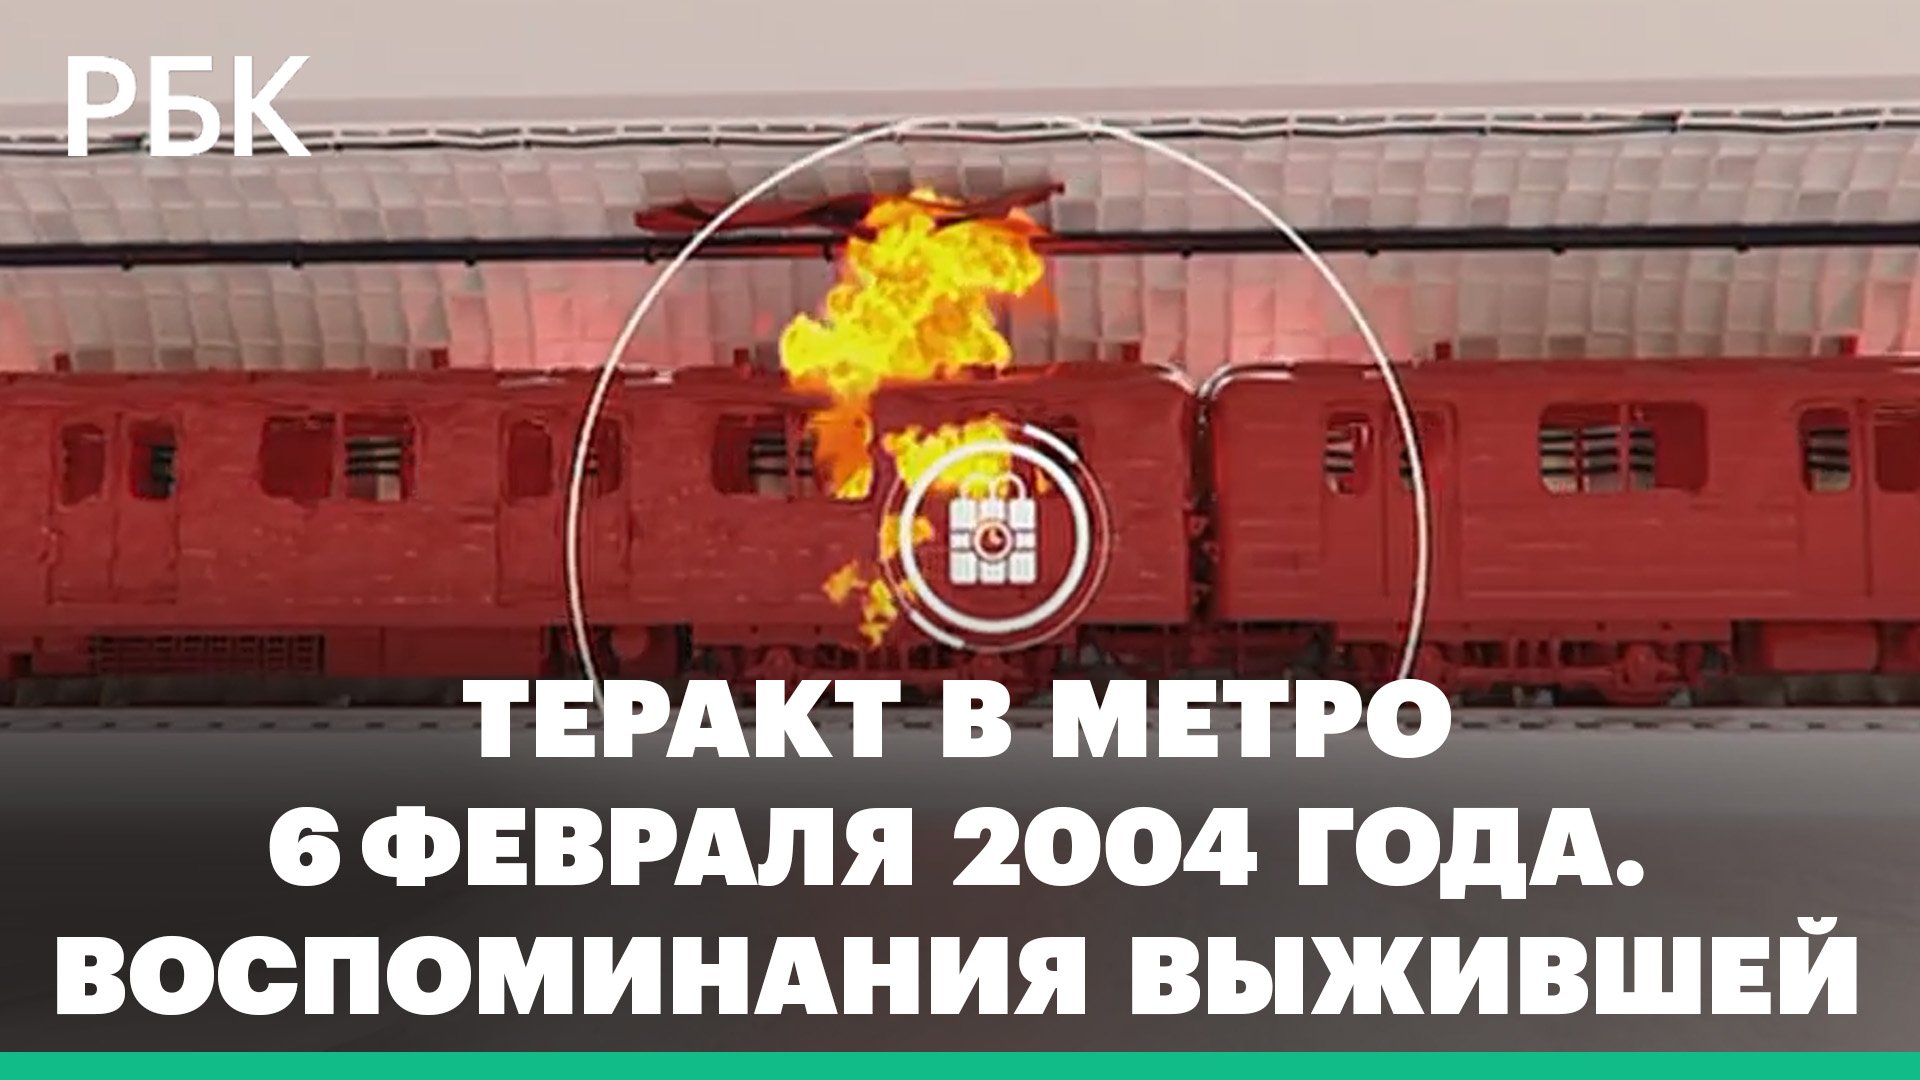 20 лет со дня теракта в метро на станции "Автозаводская"